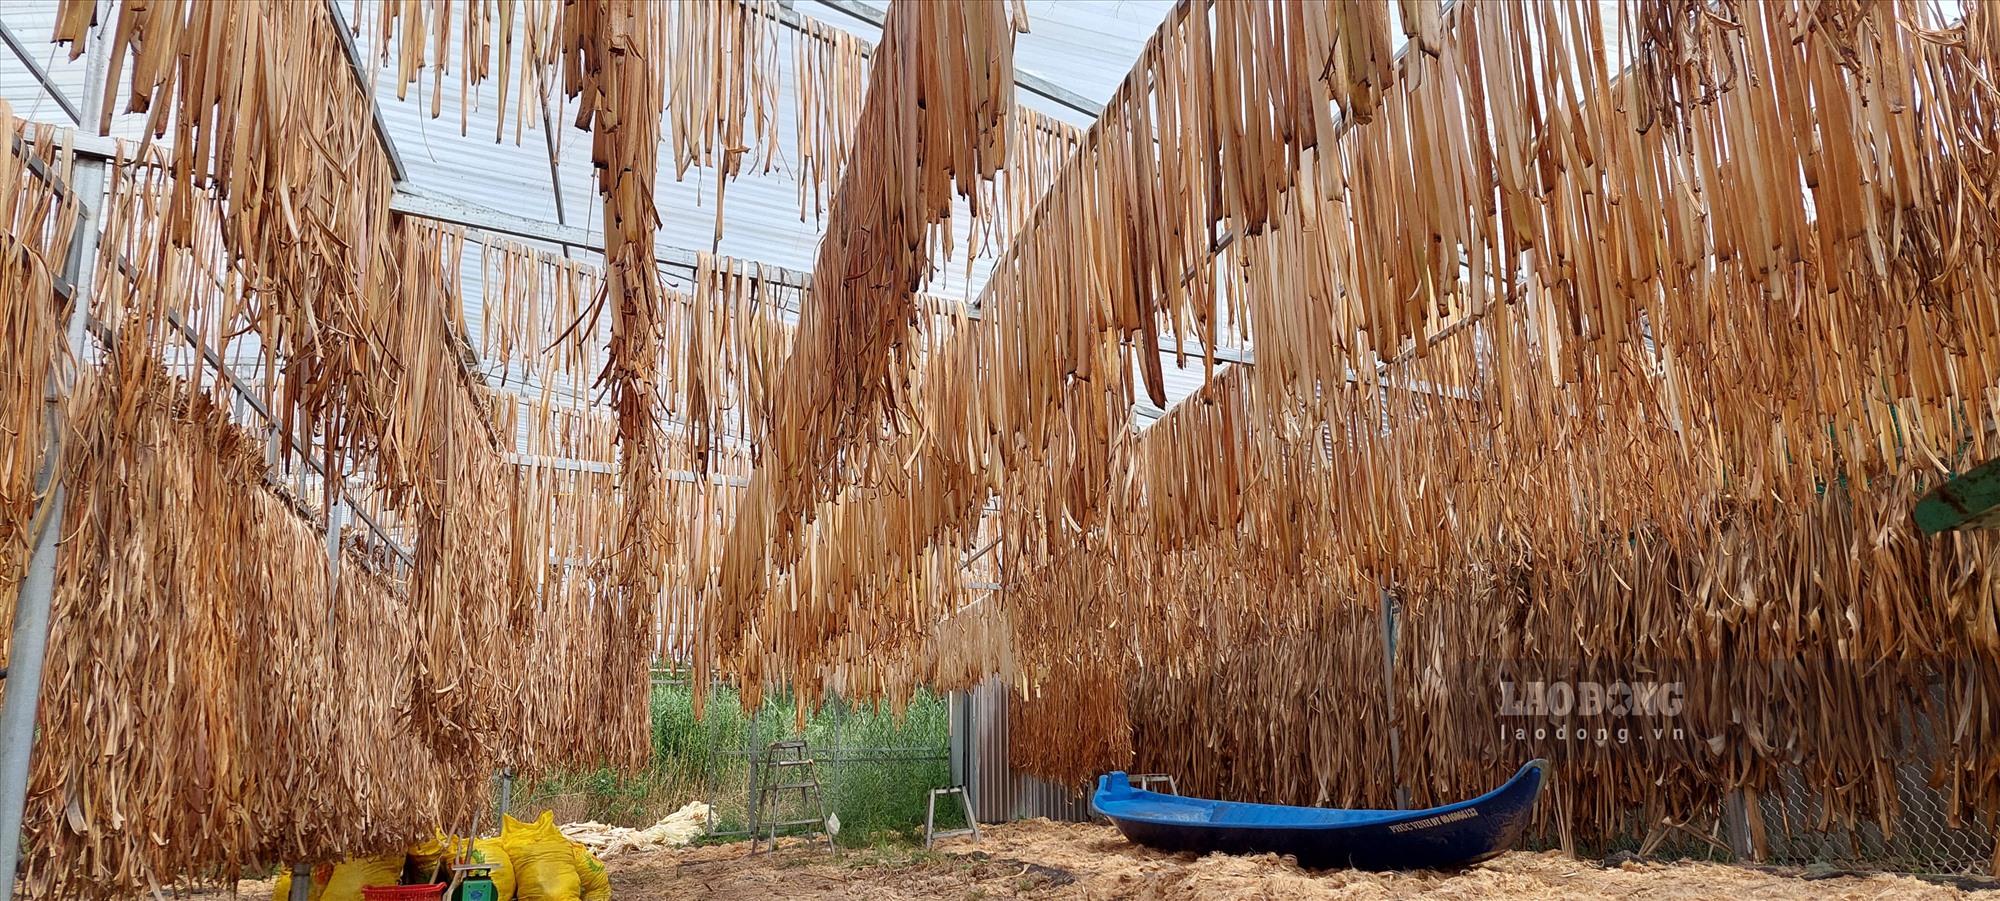 Ở địa phương có 2.700 ha diện tích trồng chuối như U Minh Thượng thì việc tận dụng thân chuối bỏ đi (hoặc cho gia súc ăn) để tái chế lại làm nguyên liệu sản xuất thủ công mỹ nghệ đã nâng cao giá trị cho cây chuối.